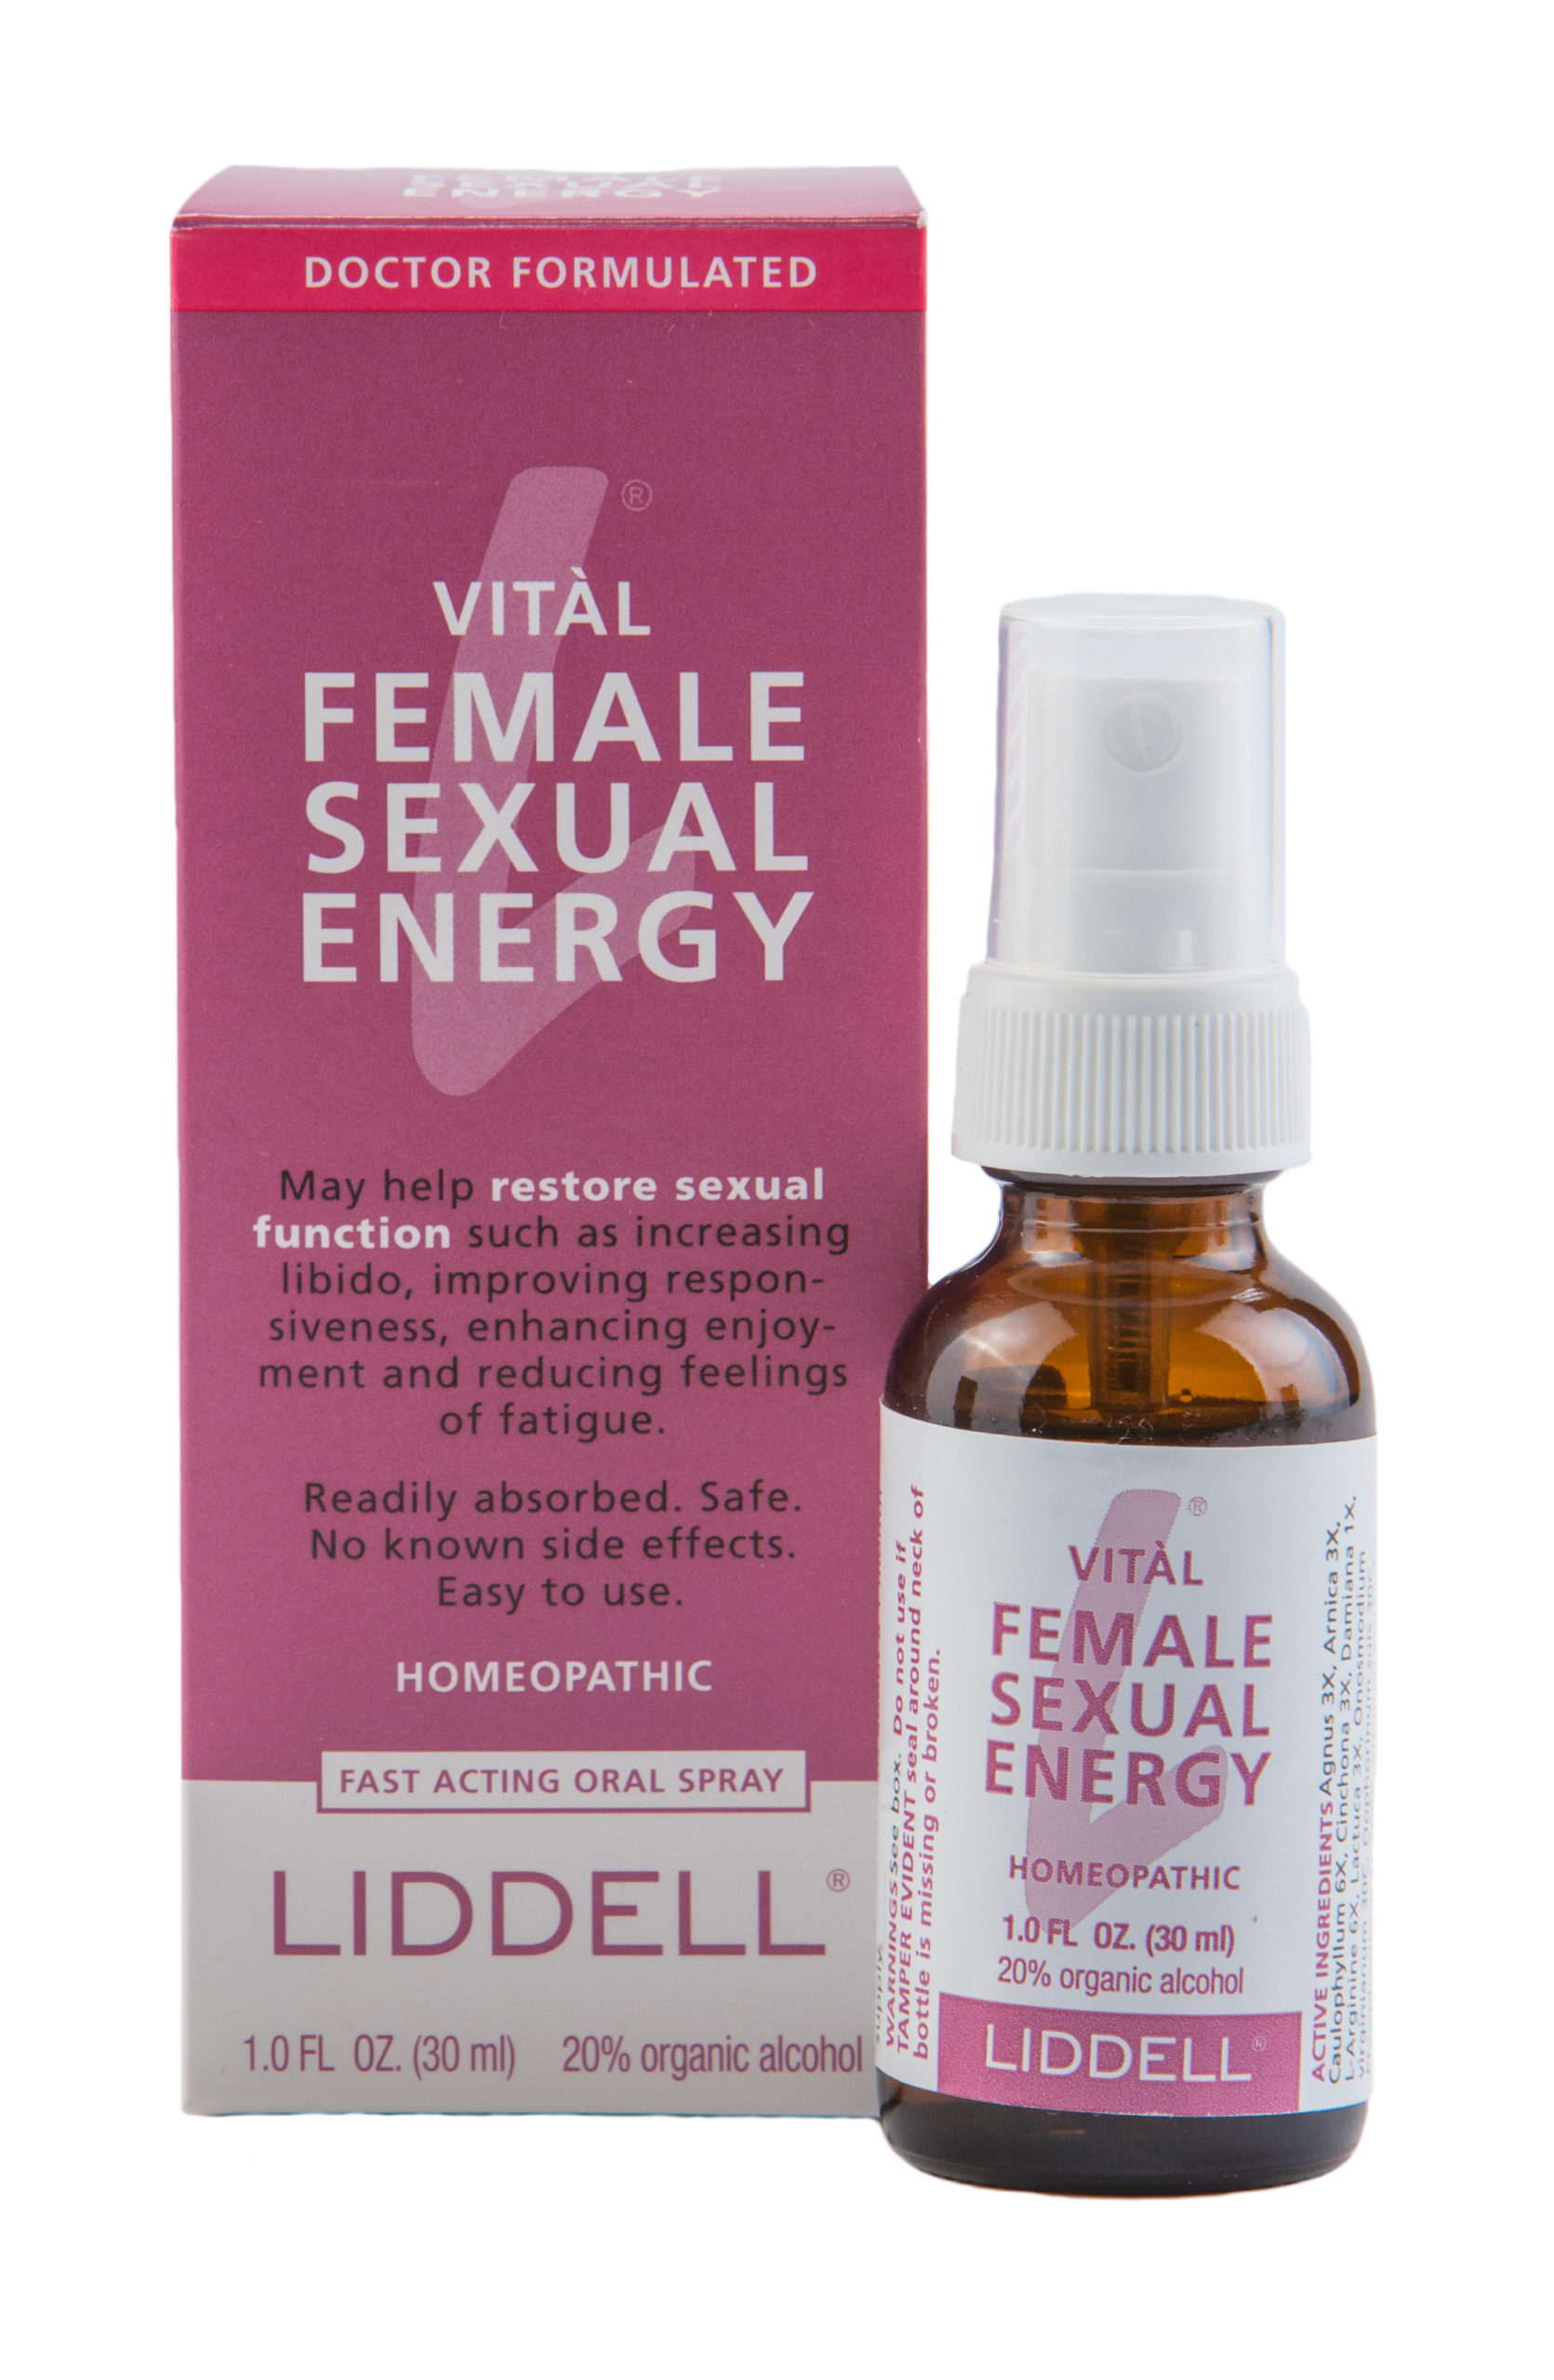 Vital Female Sexual Energy